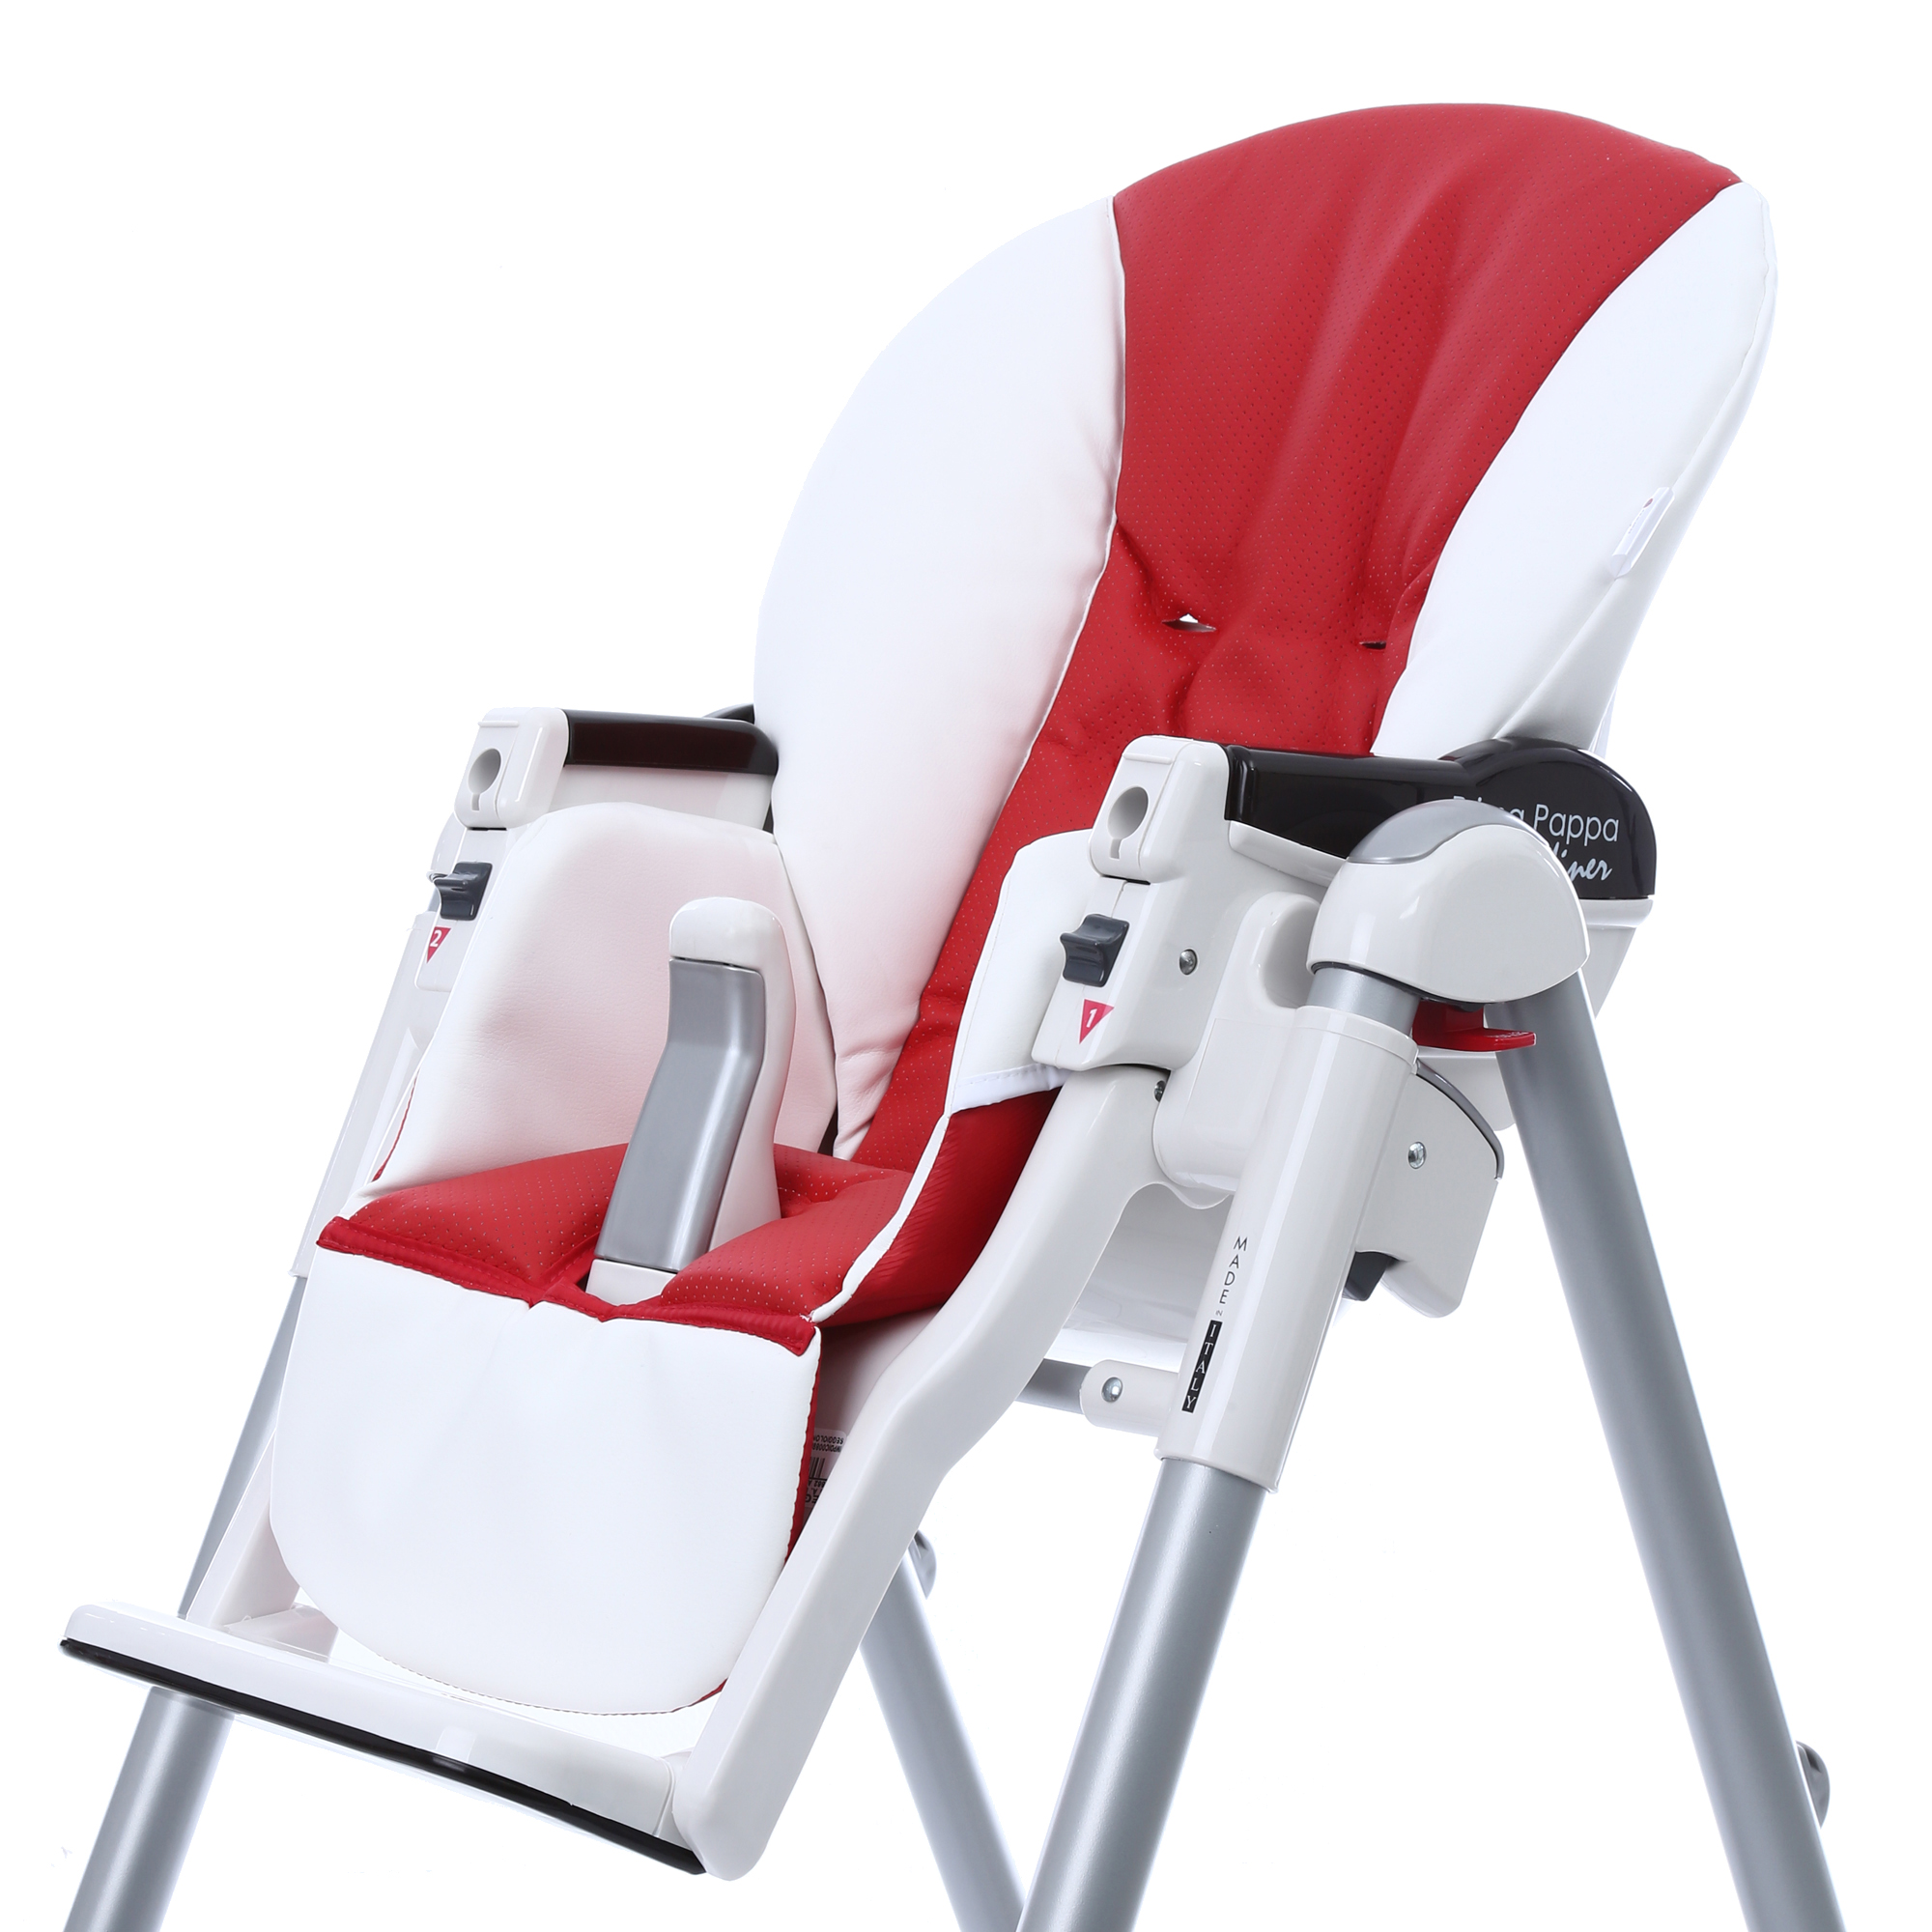 Сменный чехол стульчика для кормления Esspero Sport Peg-Perego Diner White, Red  - купить